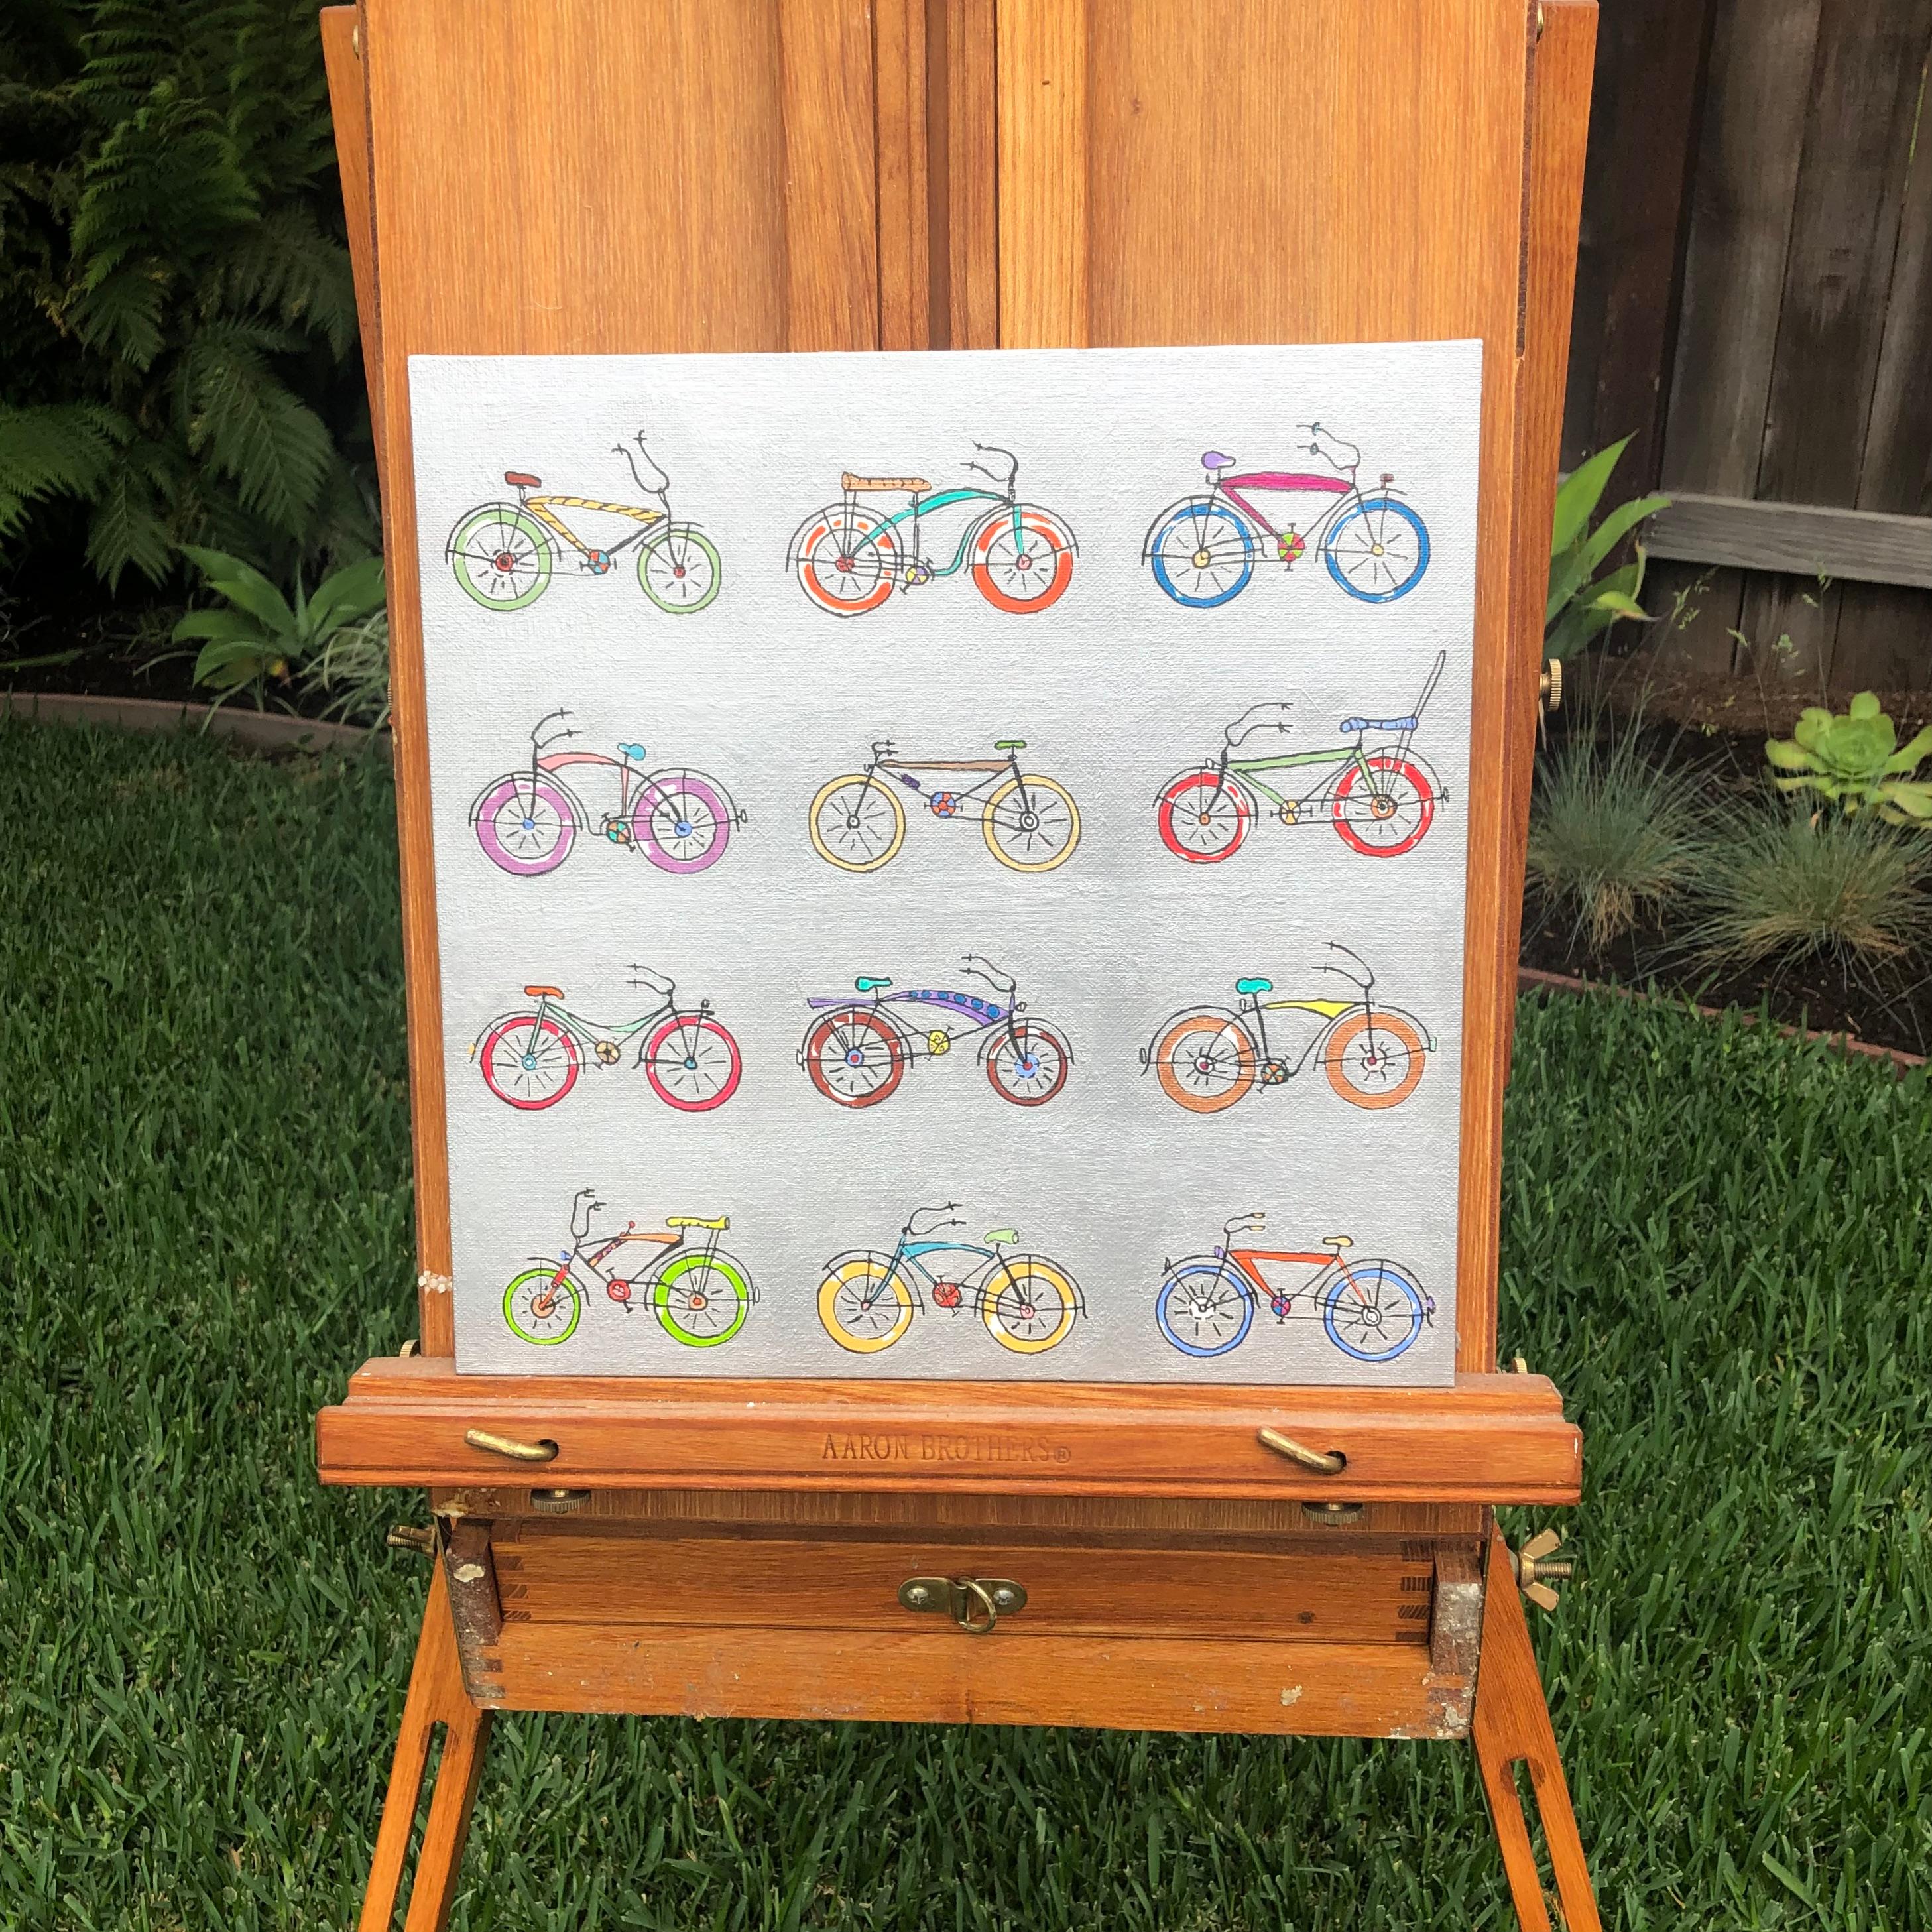 <p>Kommentare des Künstlers<br>Der Künstler John McCabe stellt zwölf bunte Fahrräder in einem Raster dar. Der solide silberne Hintergrund lässt die Fahrräder in leuchtenden Farben erstrahlen. 